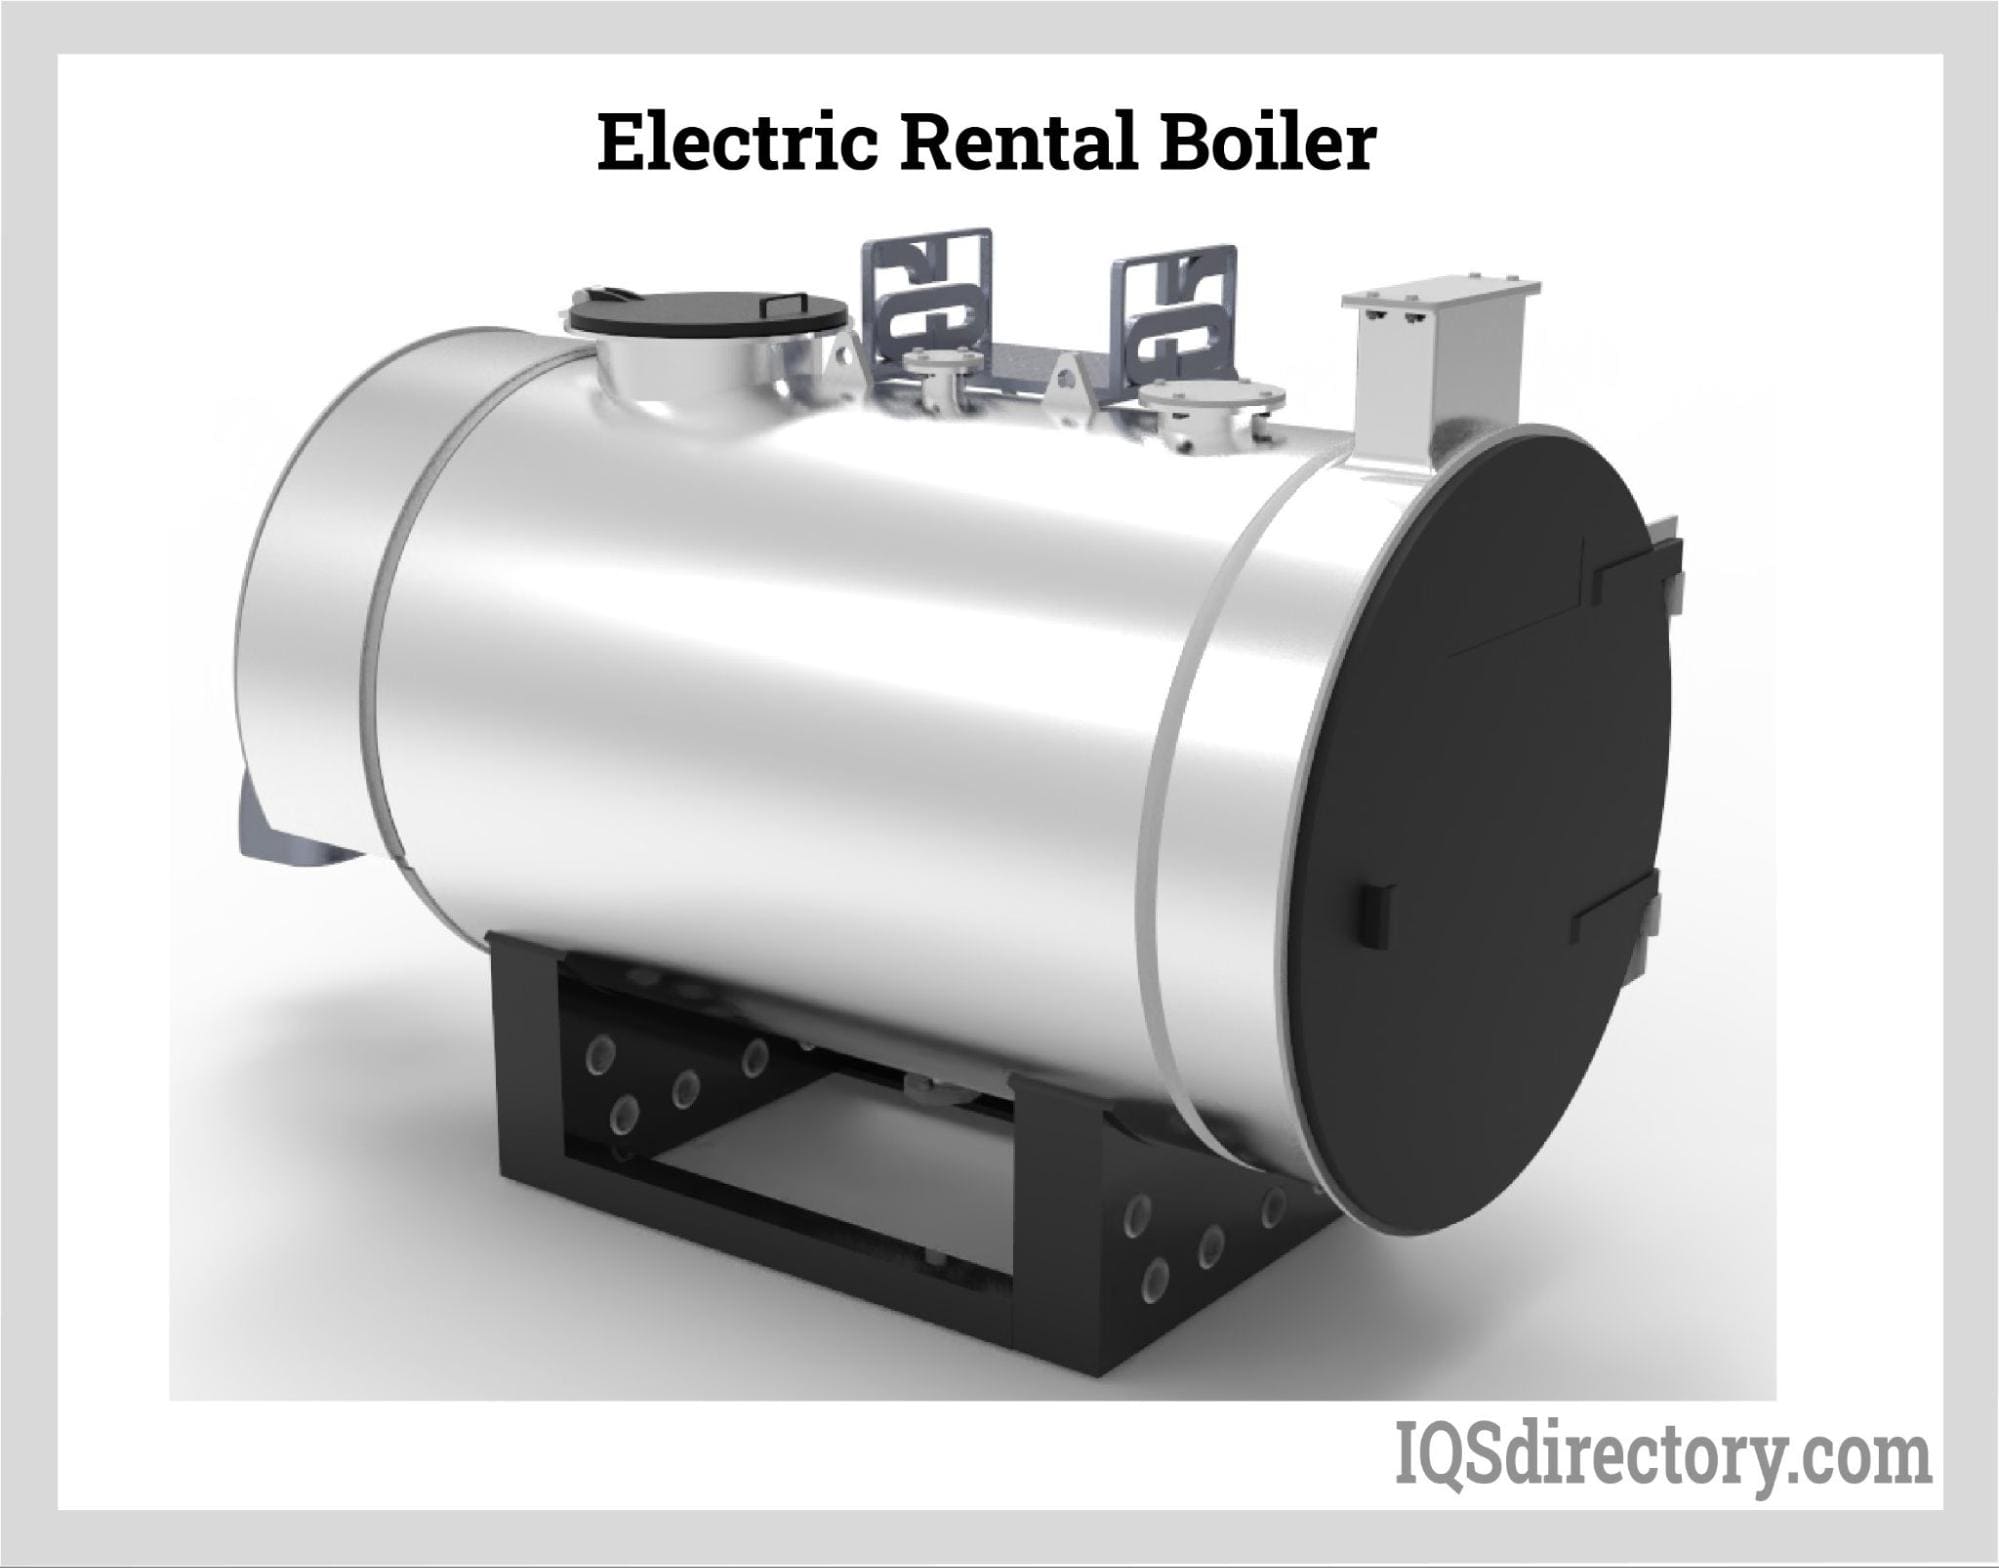 Electric Rental Boiler